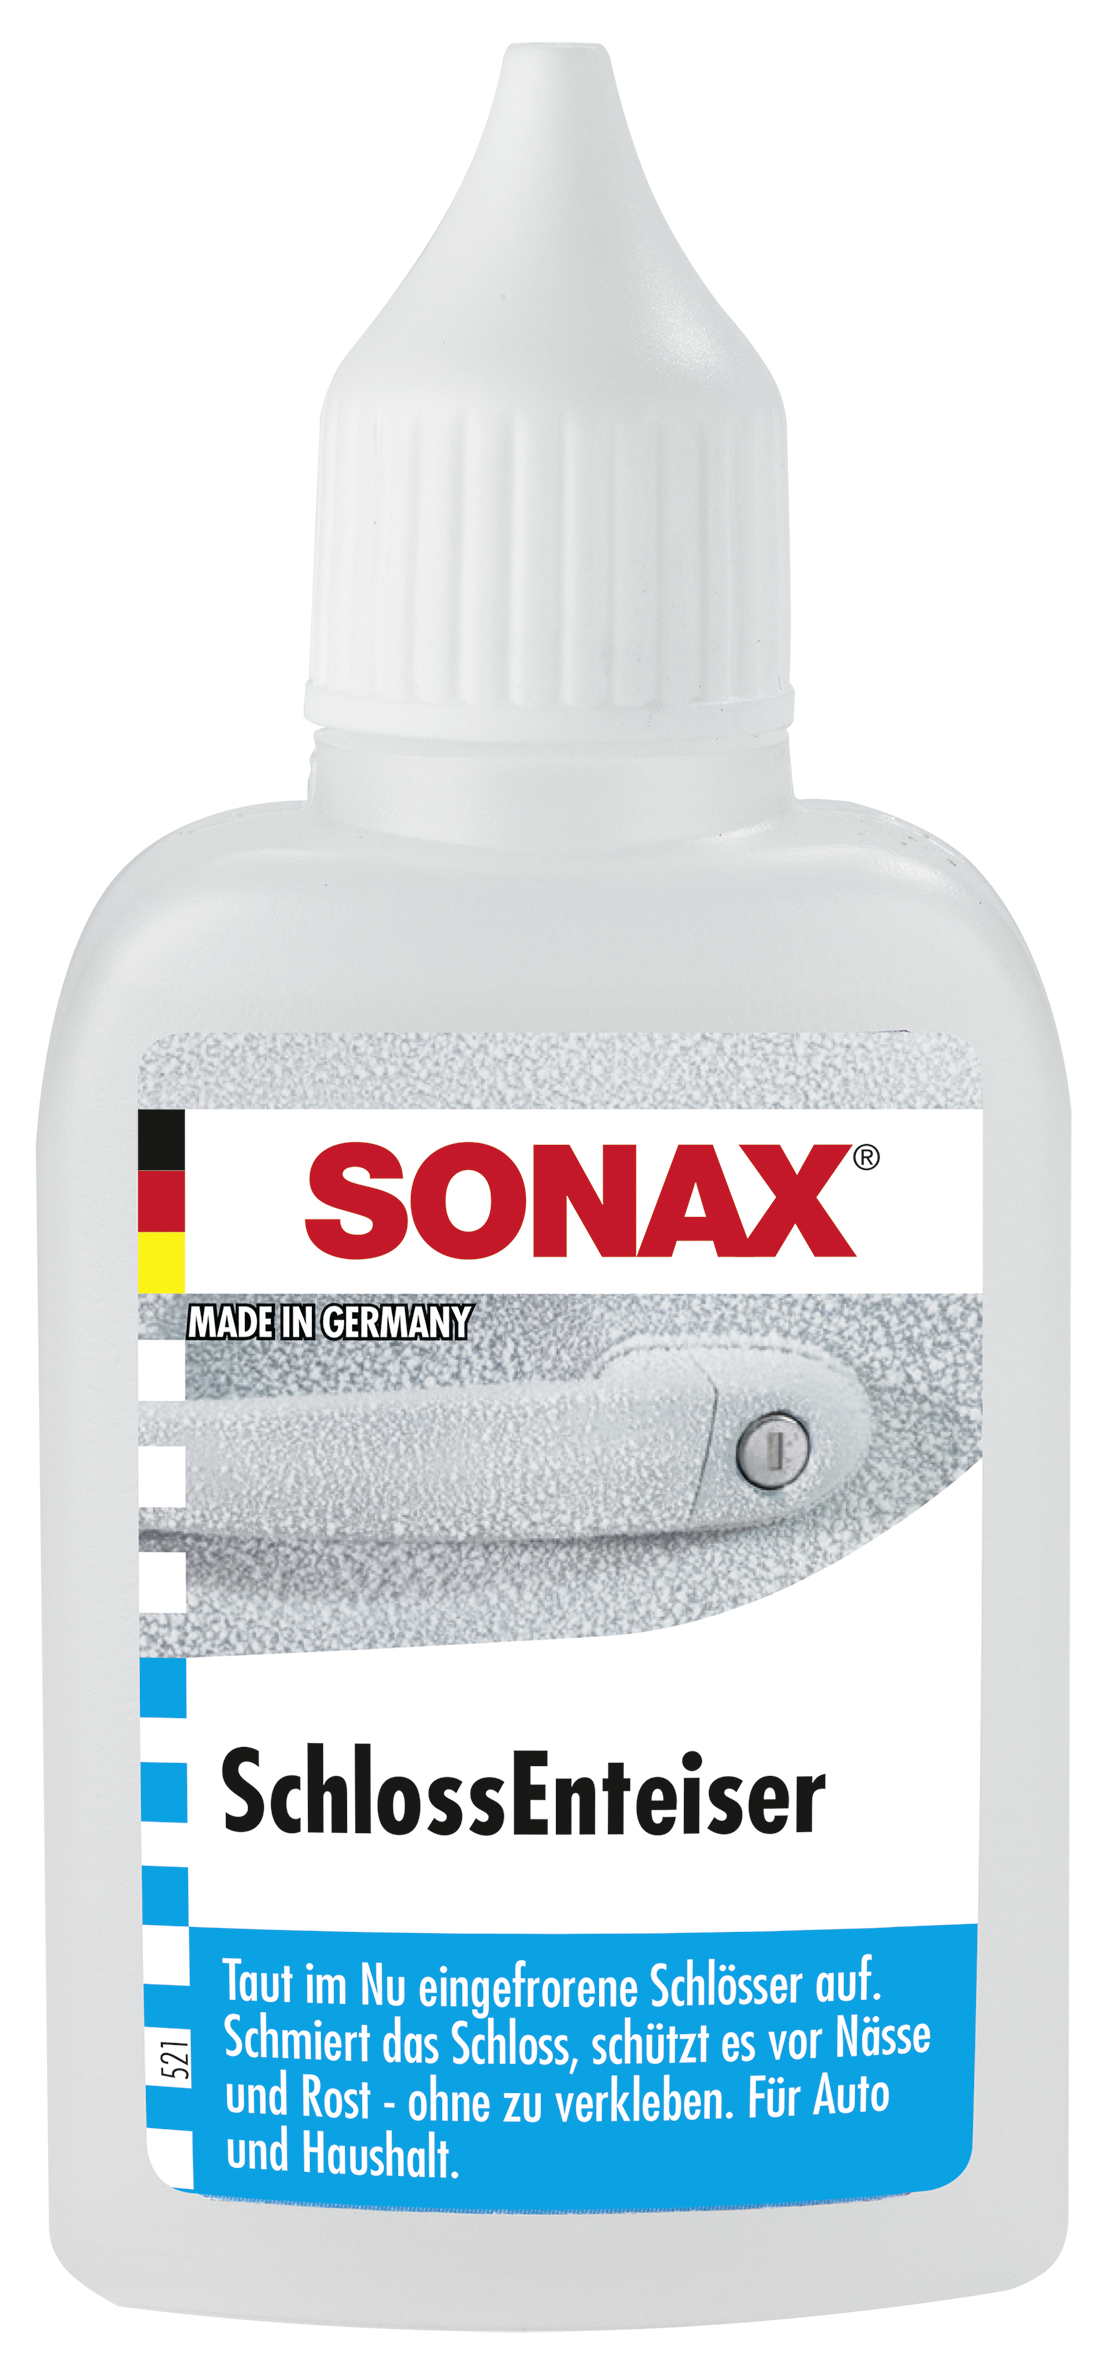 FLOWMAXX Autopflegeshop - SONAX SchlossEnteiser 50ml